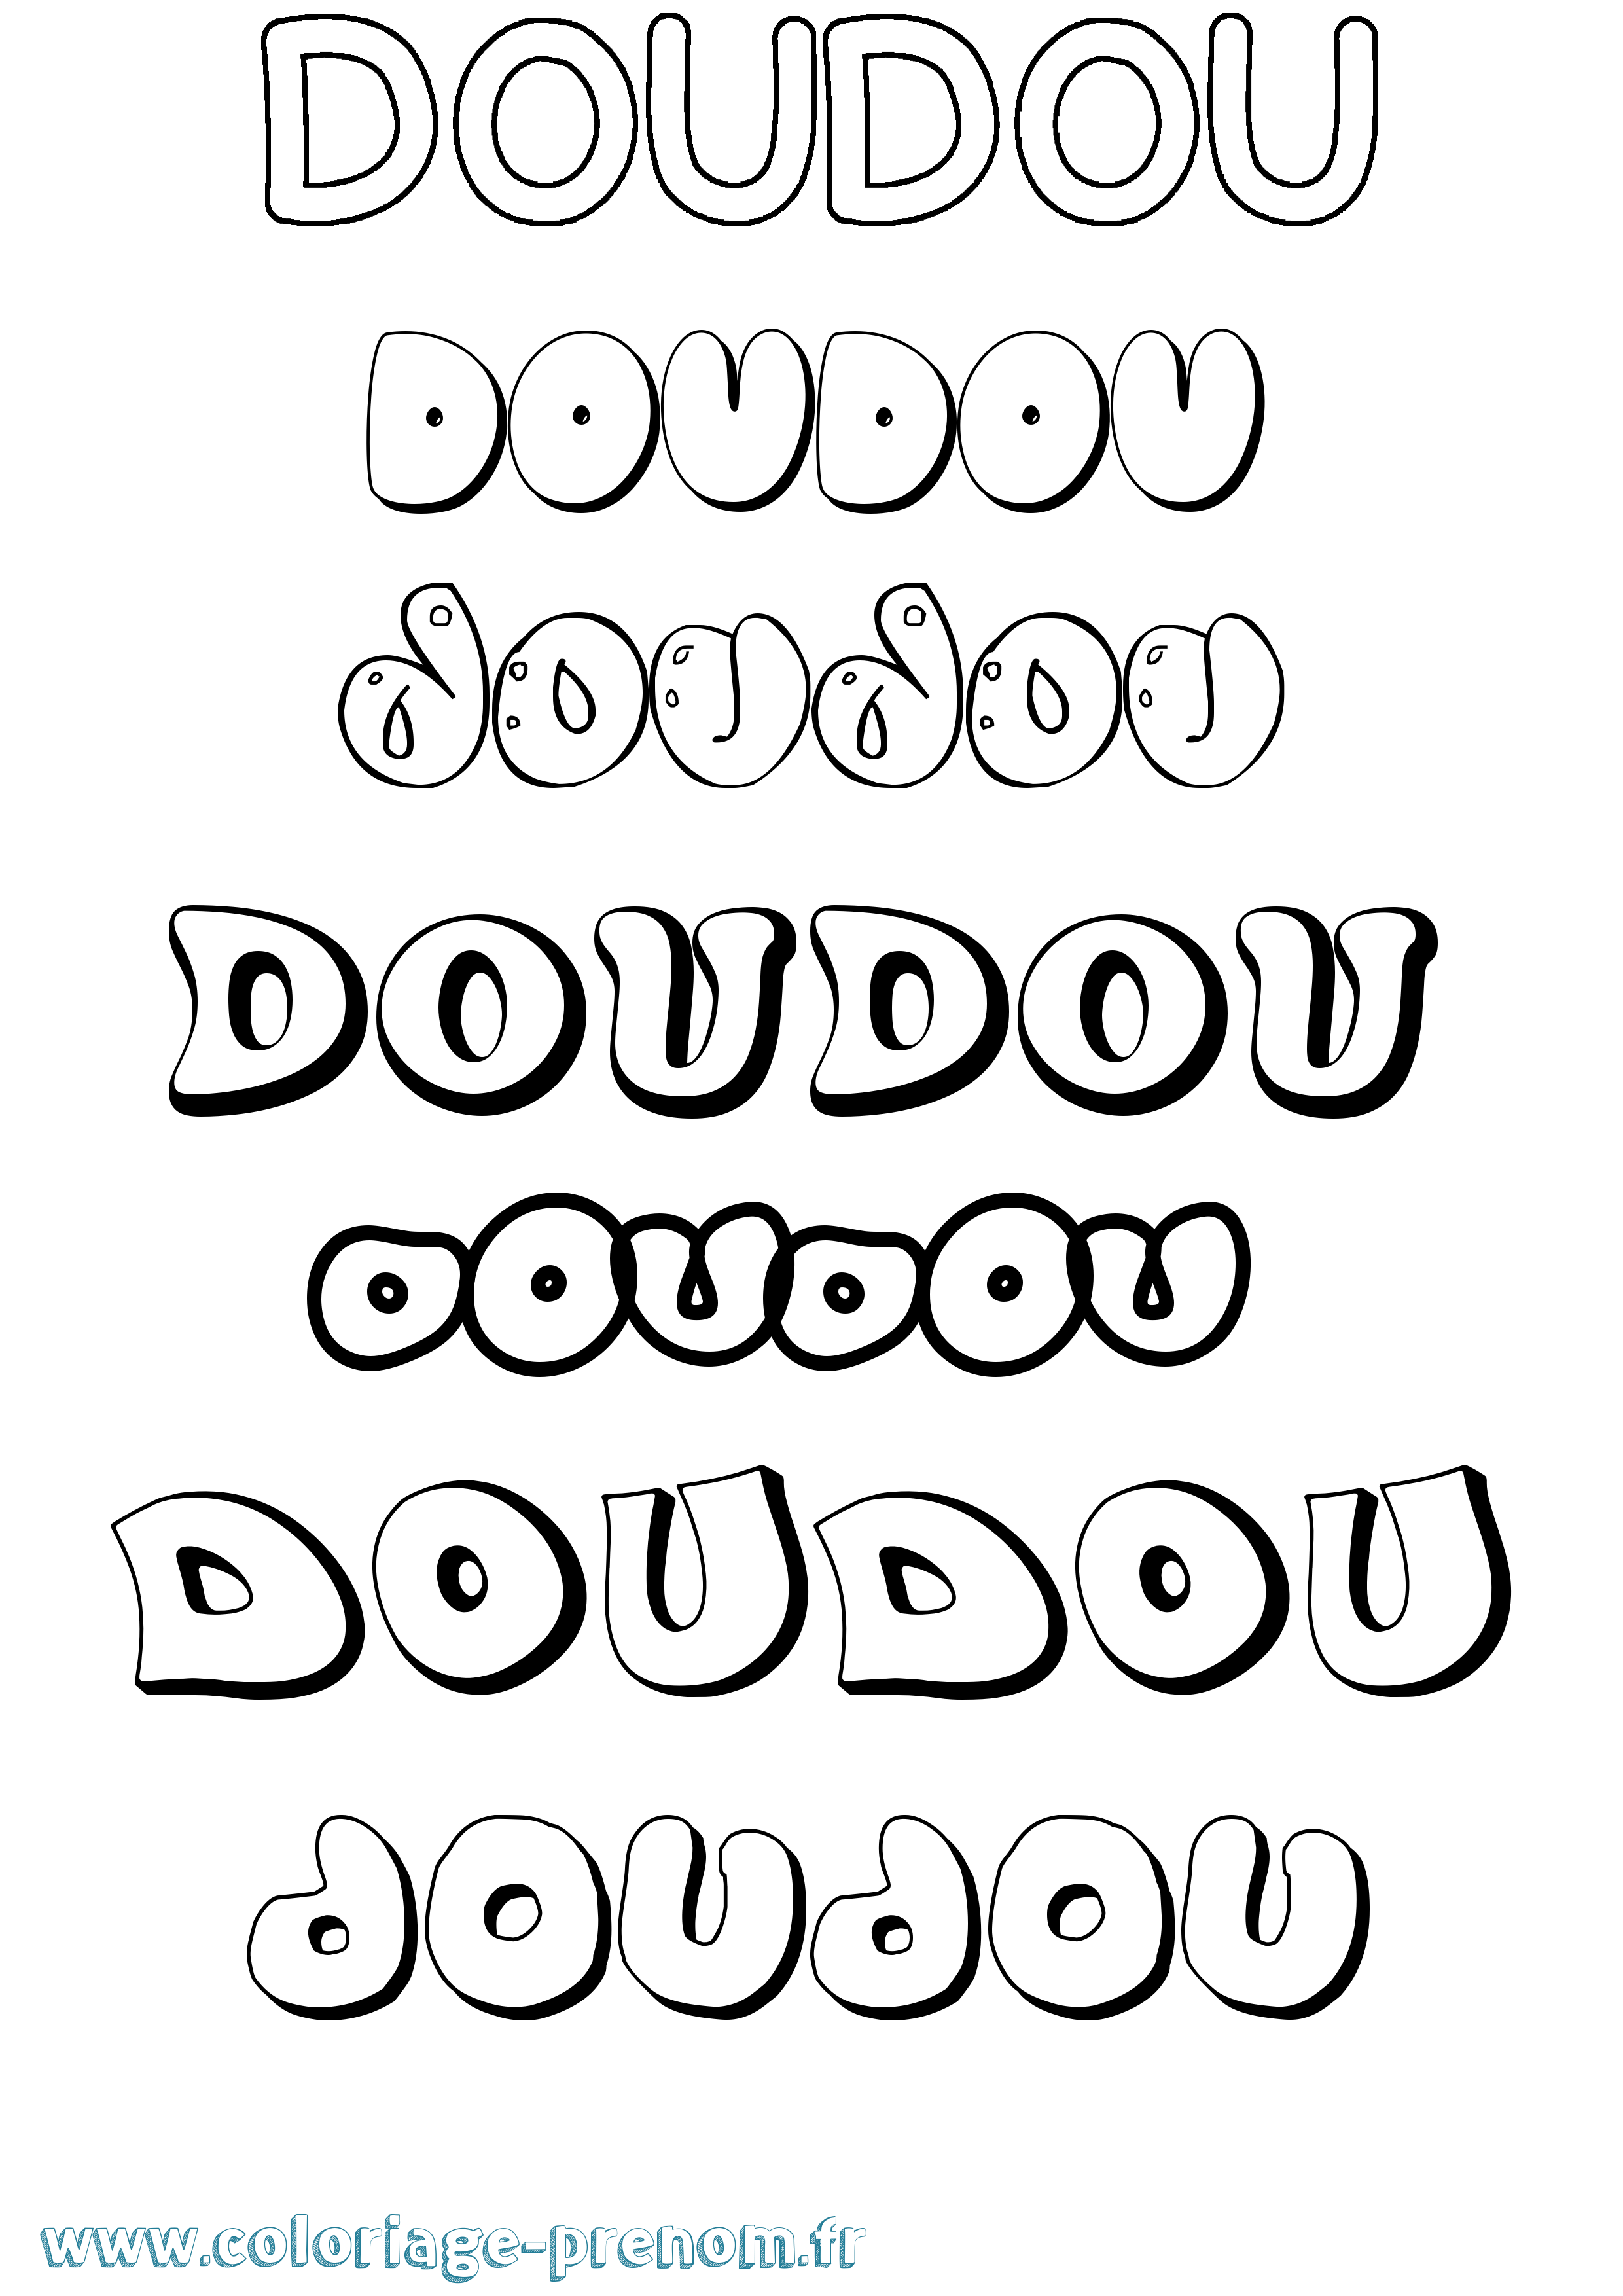 Coloriage prénom Doudou Bubble